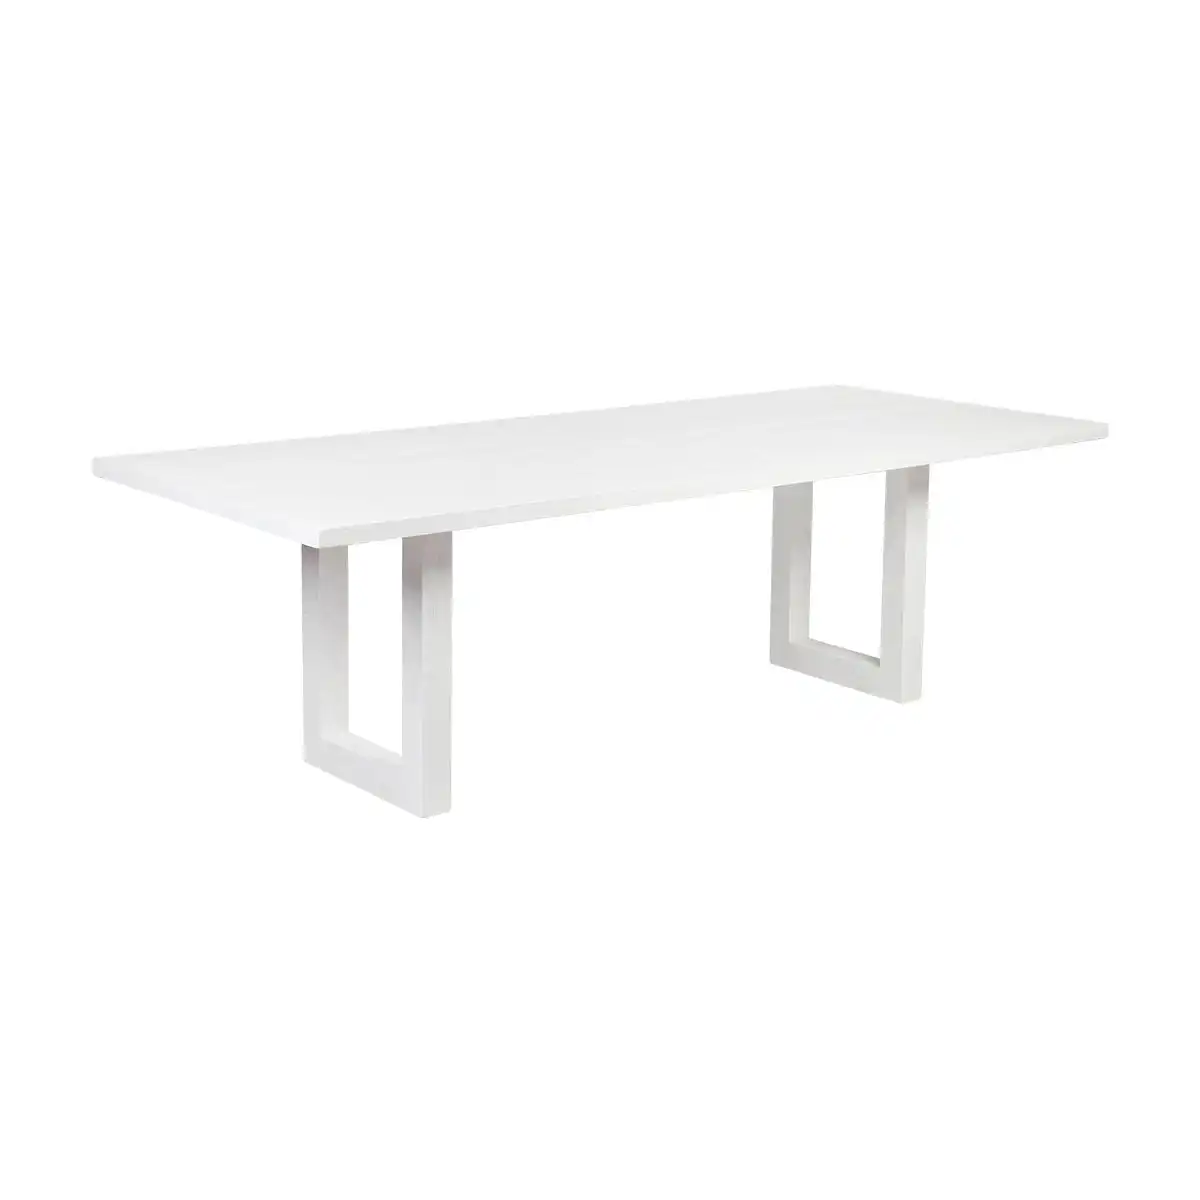 Leeton Dining Table - 2m White